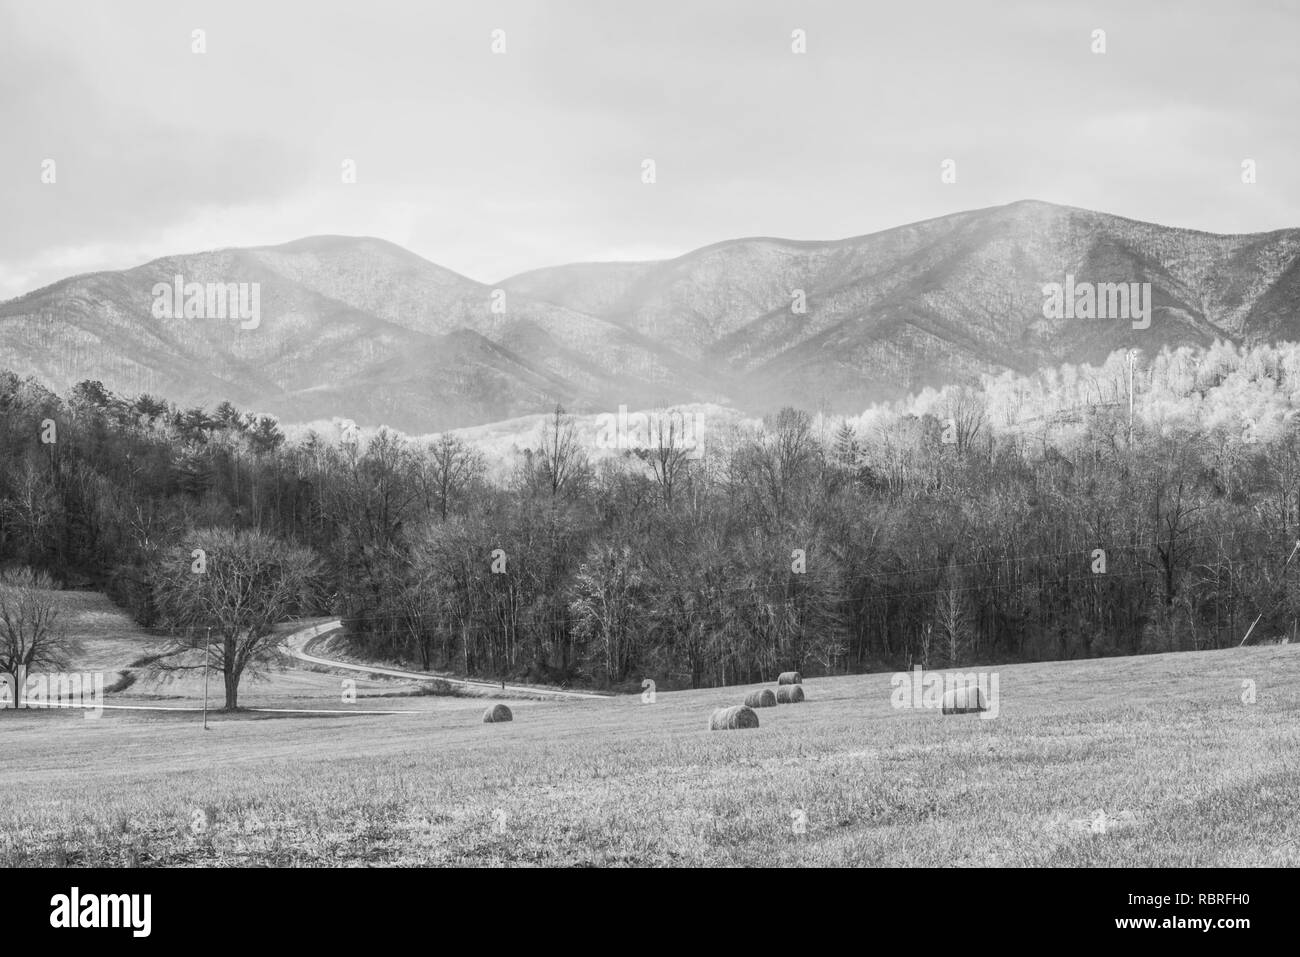 Les pics des Appalaches robuste derrière hay field en noir et blanc Banque D'Images